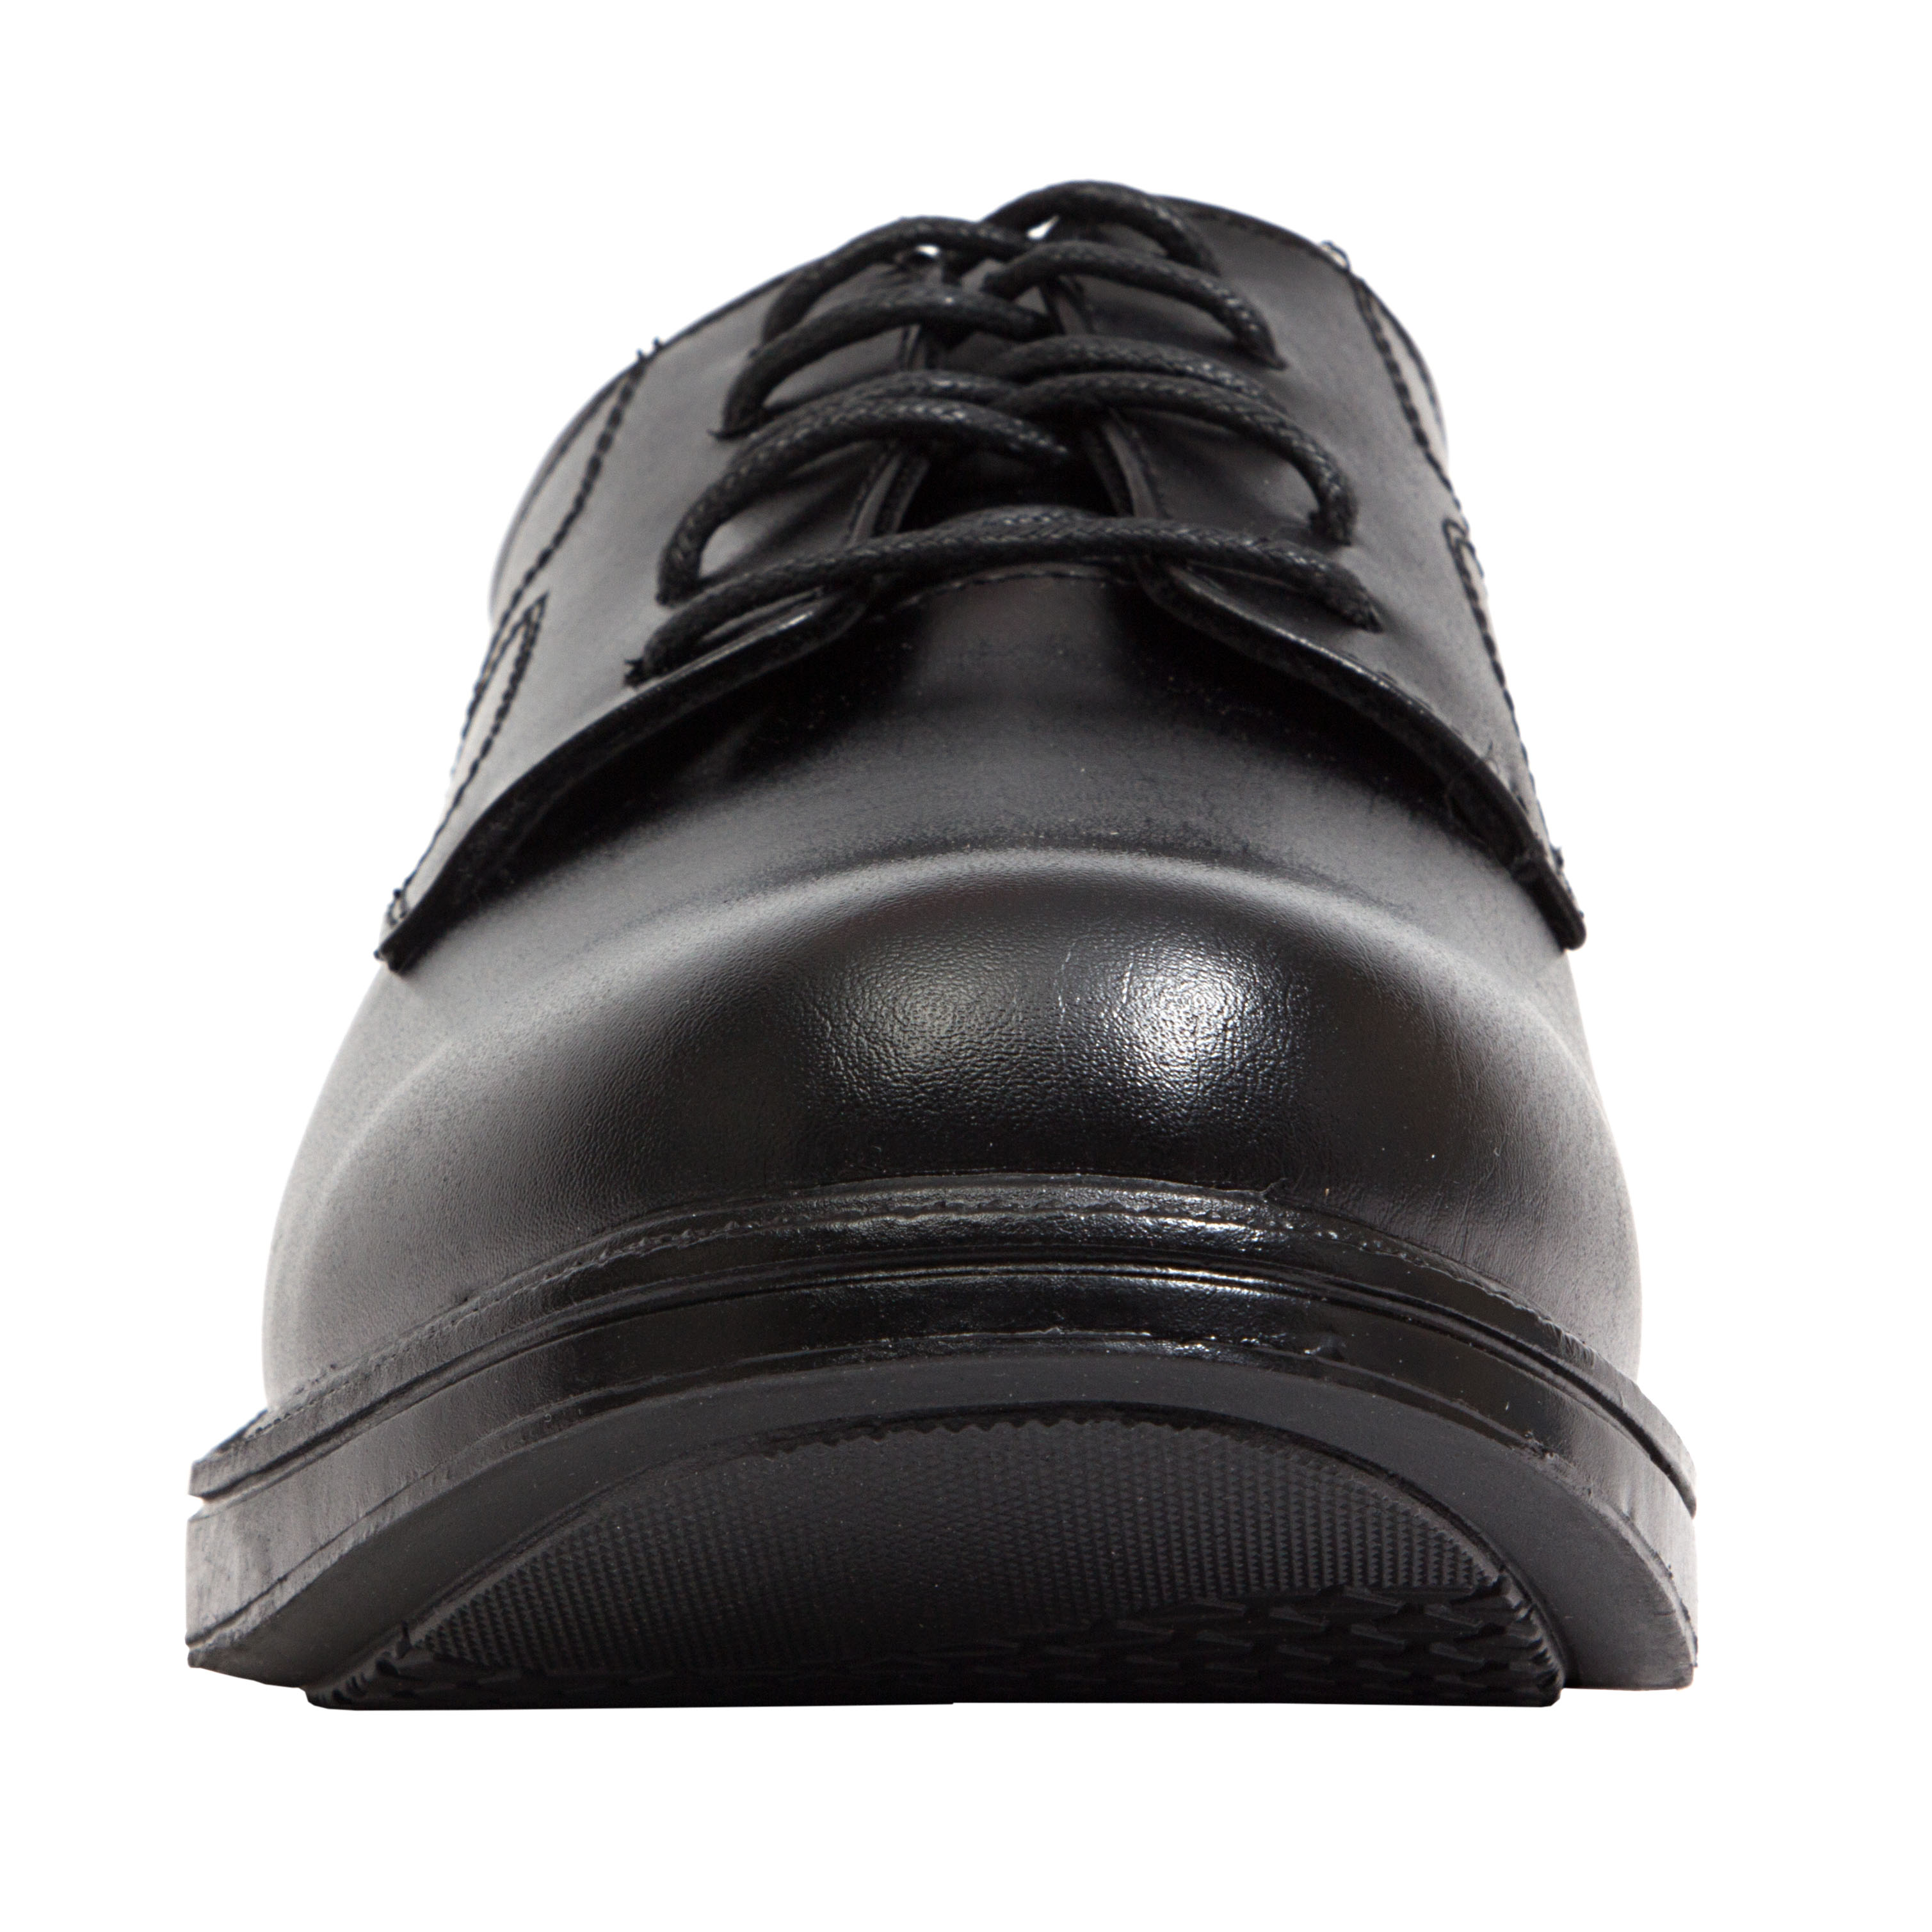 Deer Stags Men's Nu Times Waterproof Slip-Resistant Leather Oxford - Black - 10.5 Medium - image 2 of 5